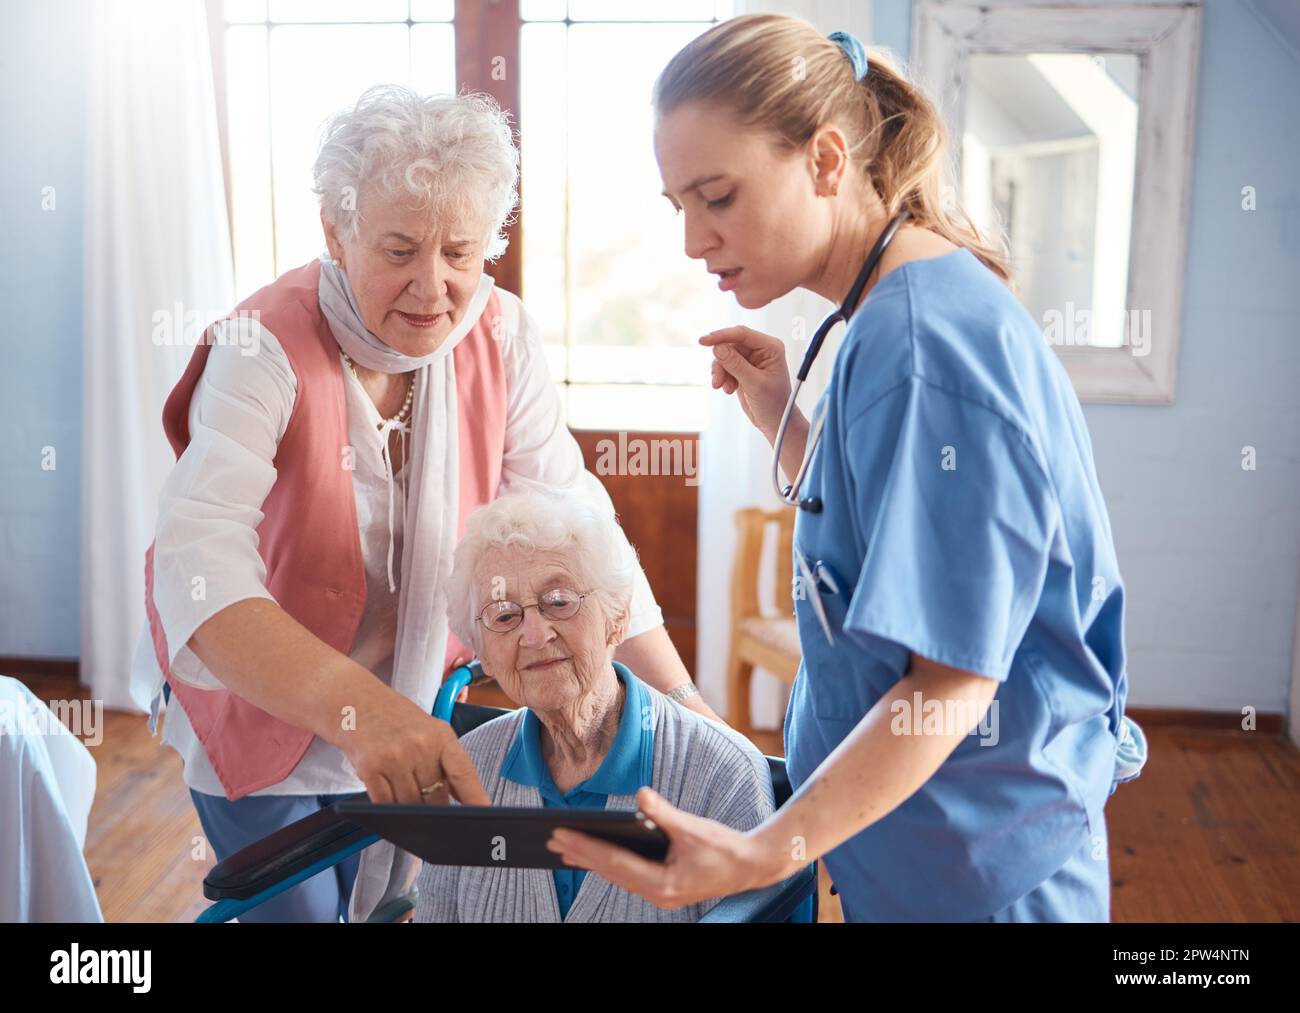 Medico, tablet e visita per assistenza agli anziani, consulto o diagnosi sanitaria a casa di vecchiaia. Infermiere o terapista medico che lavora con touchscreen h Foto Stock